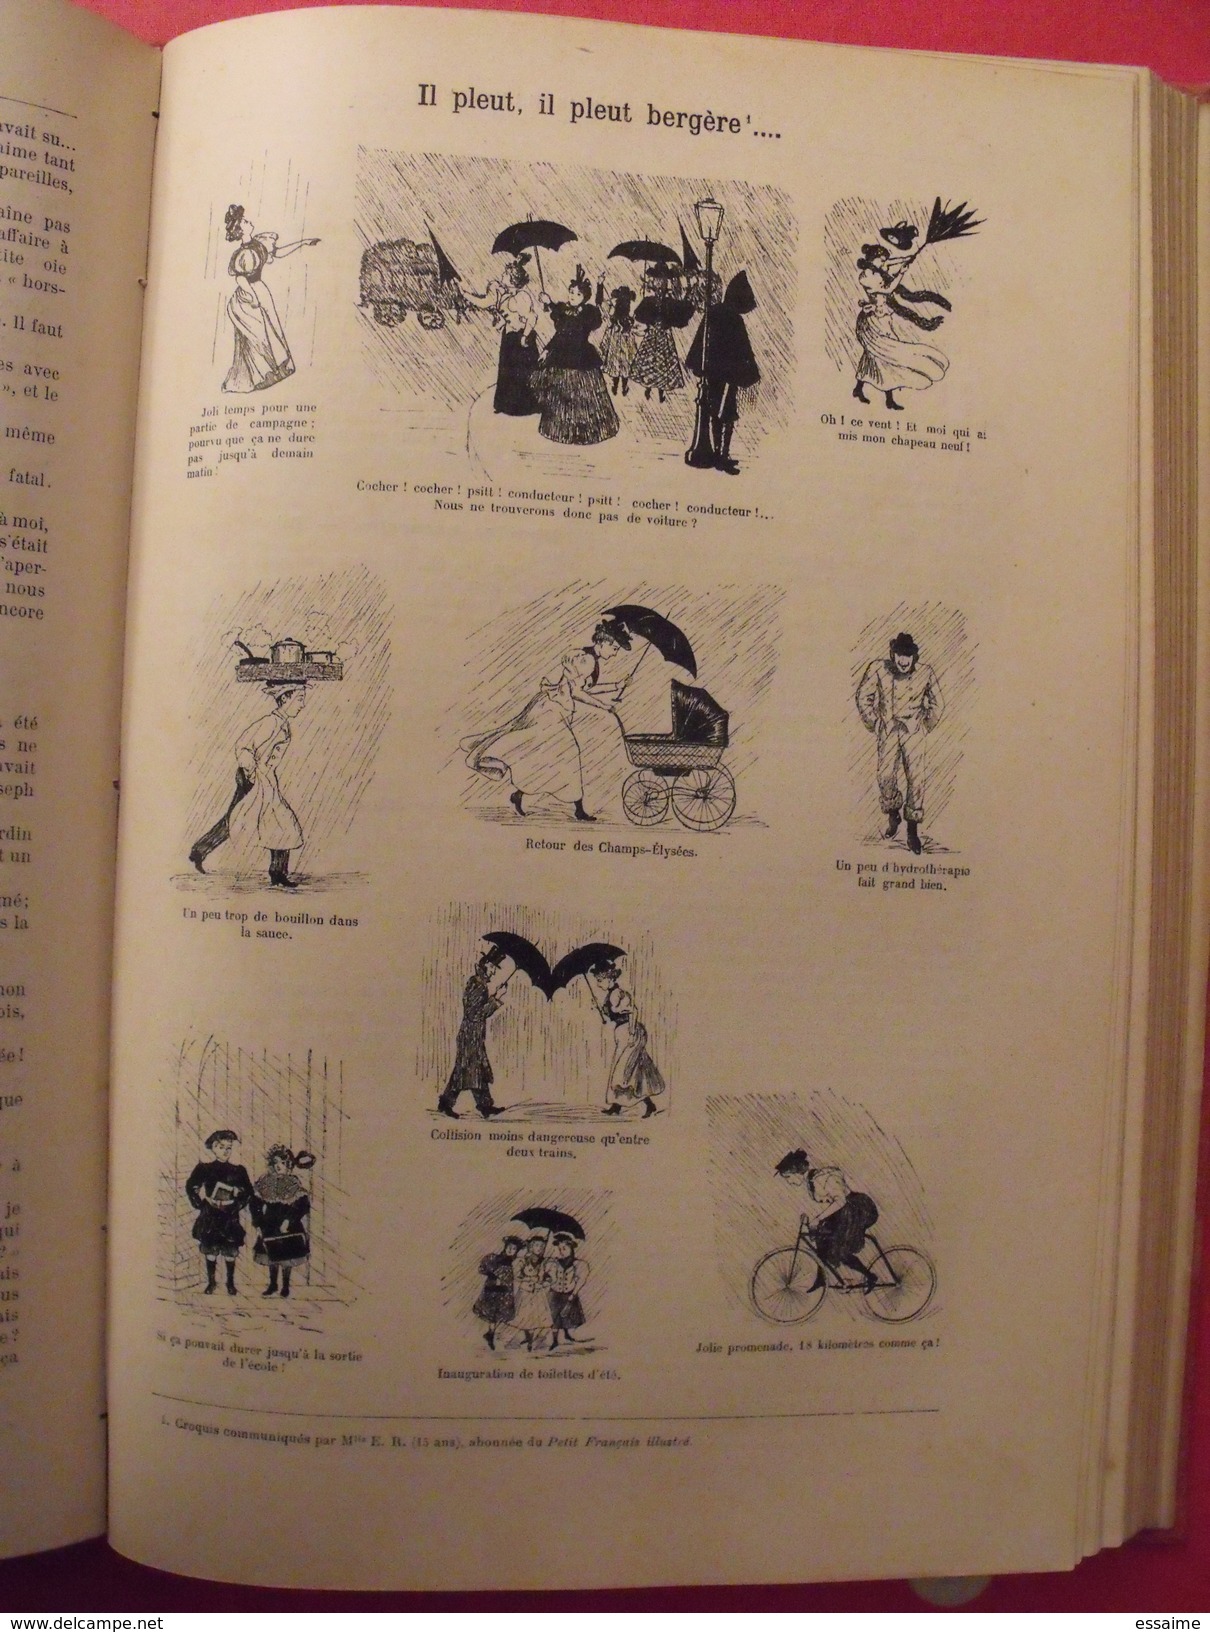 le petit français illustré. reliure 1897, n° 406 à 457 (52 n°). belles illustrations. plick plock christophe